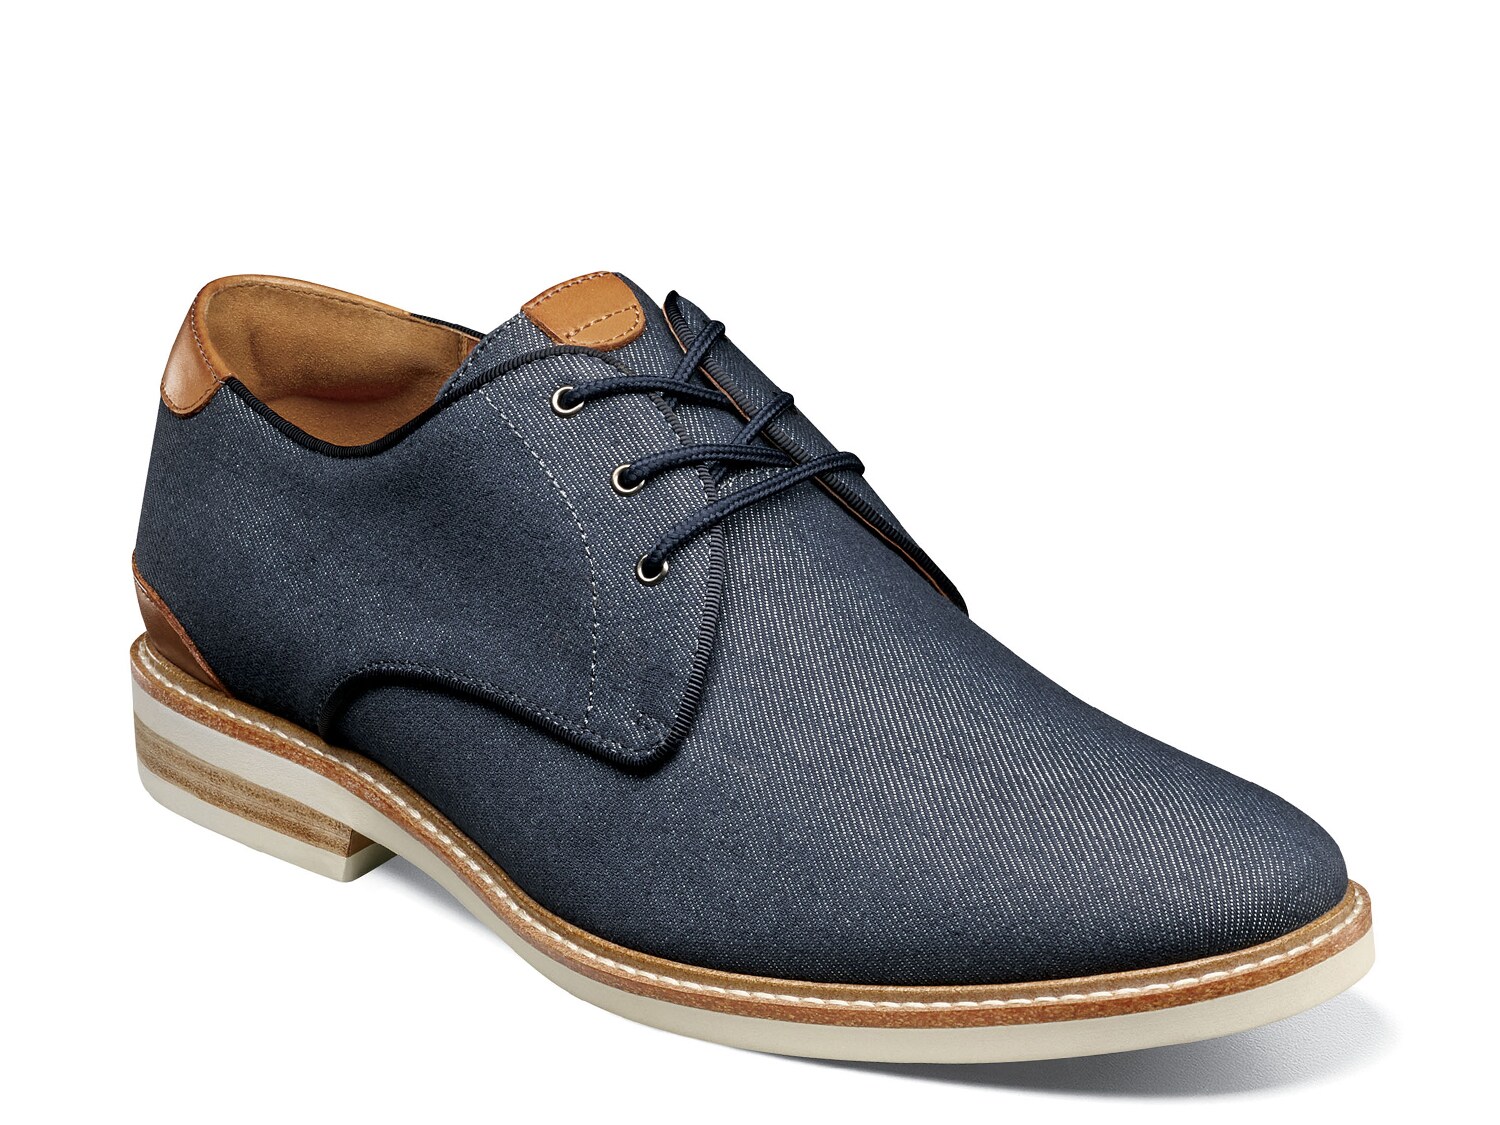 Мужская обувь g. 1461 Canvas Oxford Shoes Black. Plain Toe обувь мужская. 1461 Canvas Oxford Shoes обзор. Suede Shoes for men.